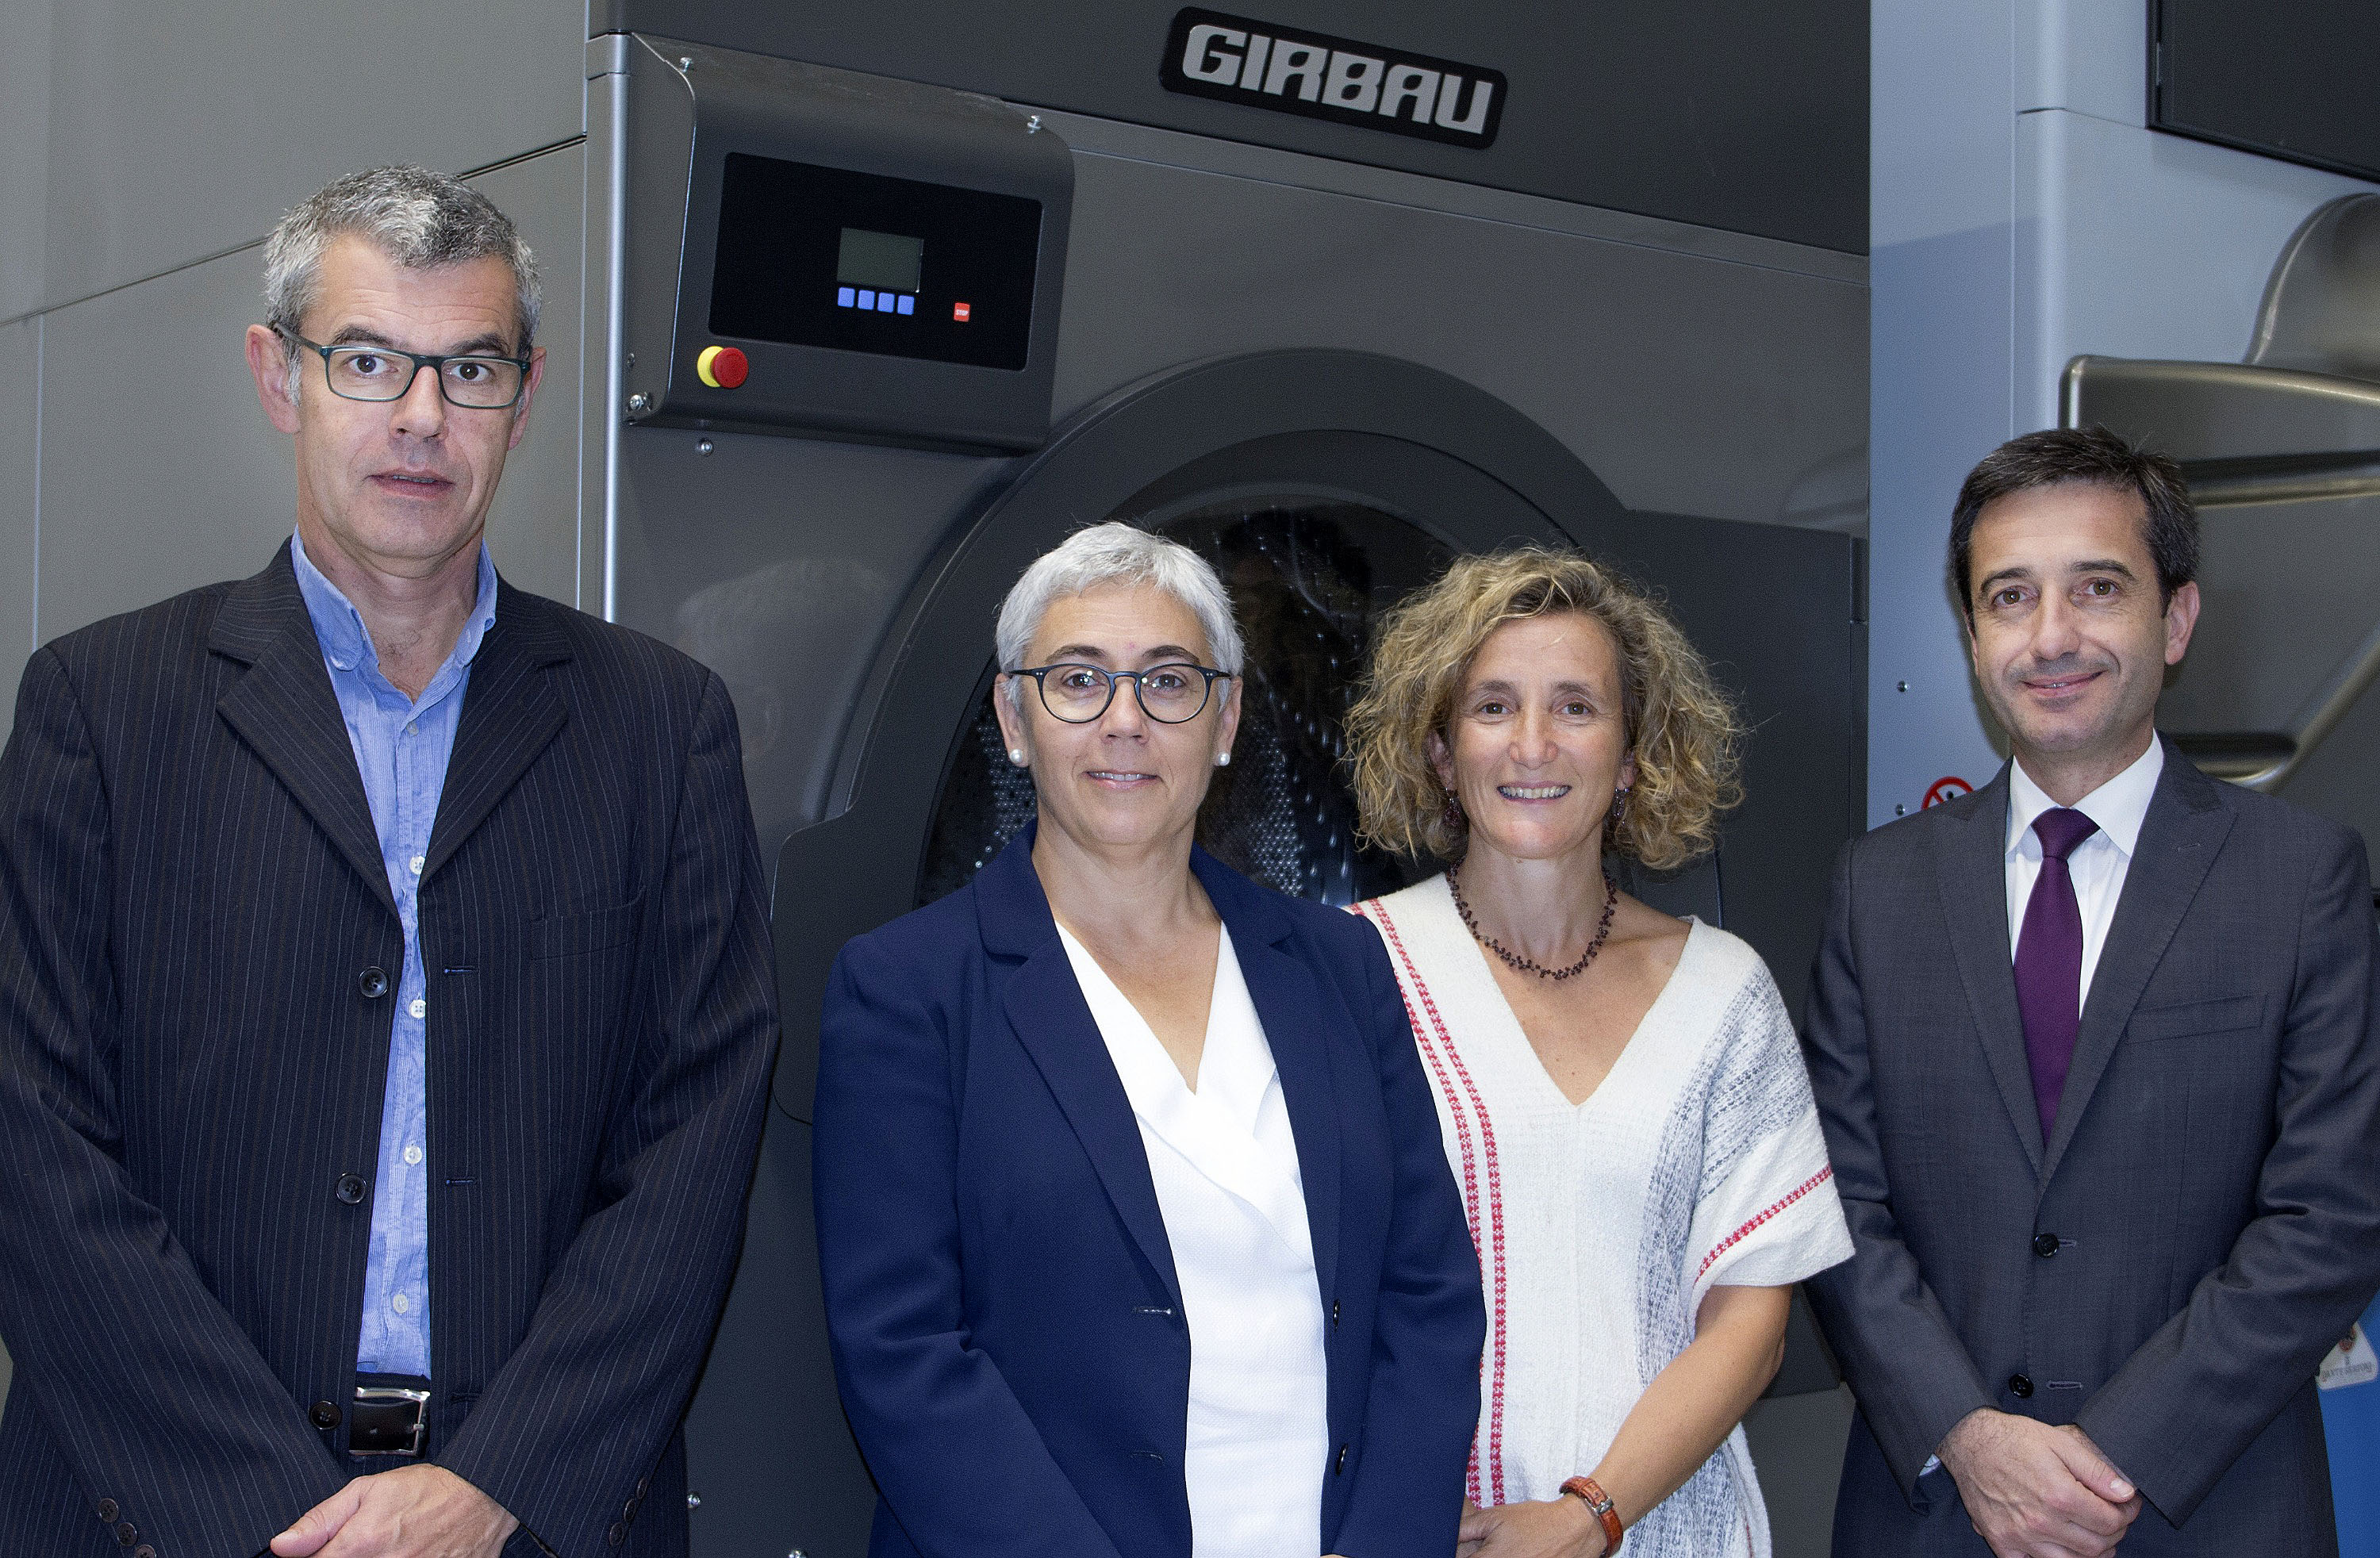 Pere i Mercè Girbau, consellers delegats del grup Girbau, amb Mariona Sanz, responsable d’Innovació, i Guillem Clofent, director general del grup, davant d’una de les màquines de bugaderia que fabriquen